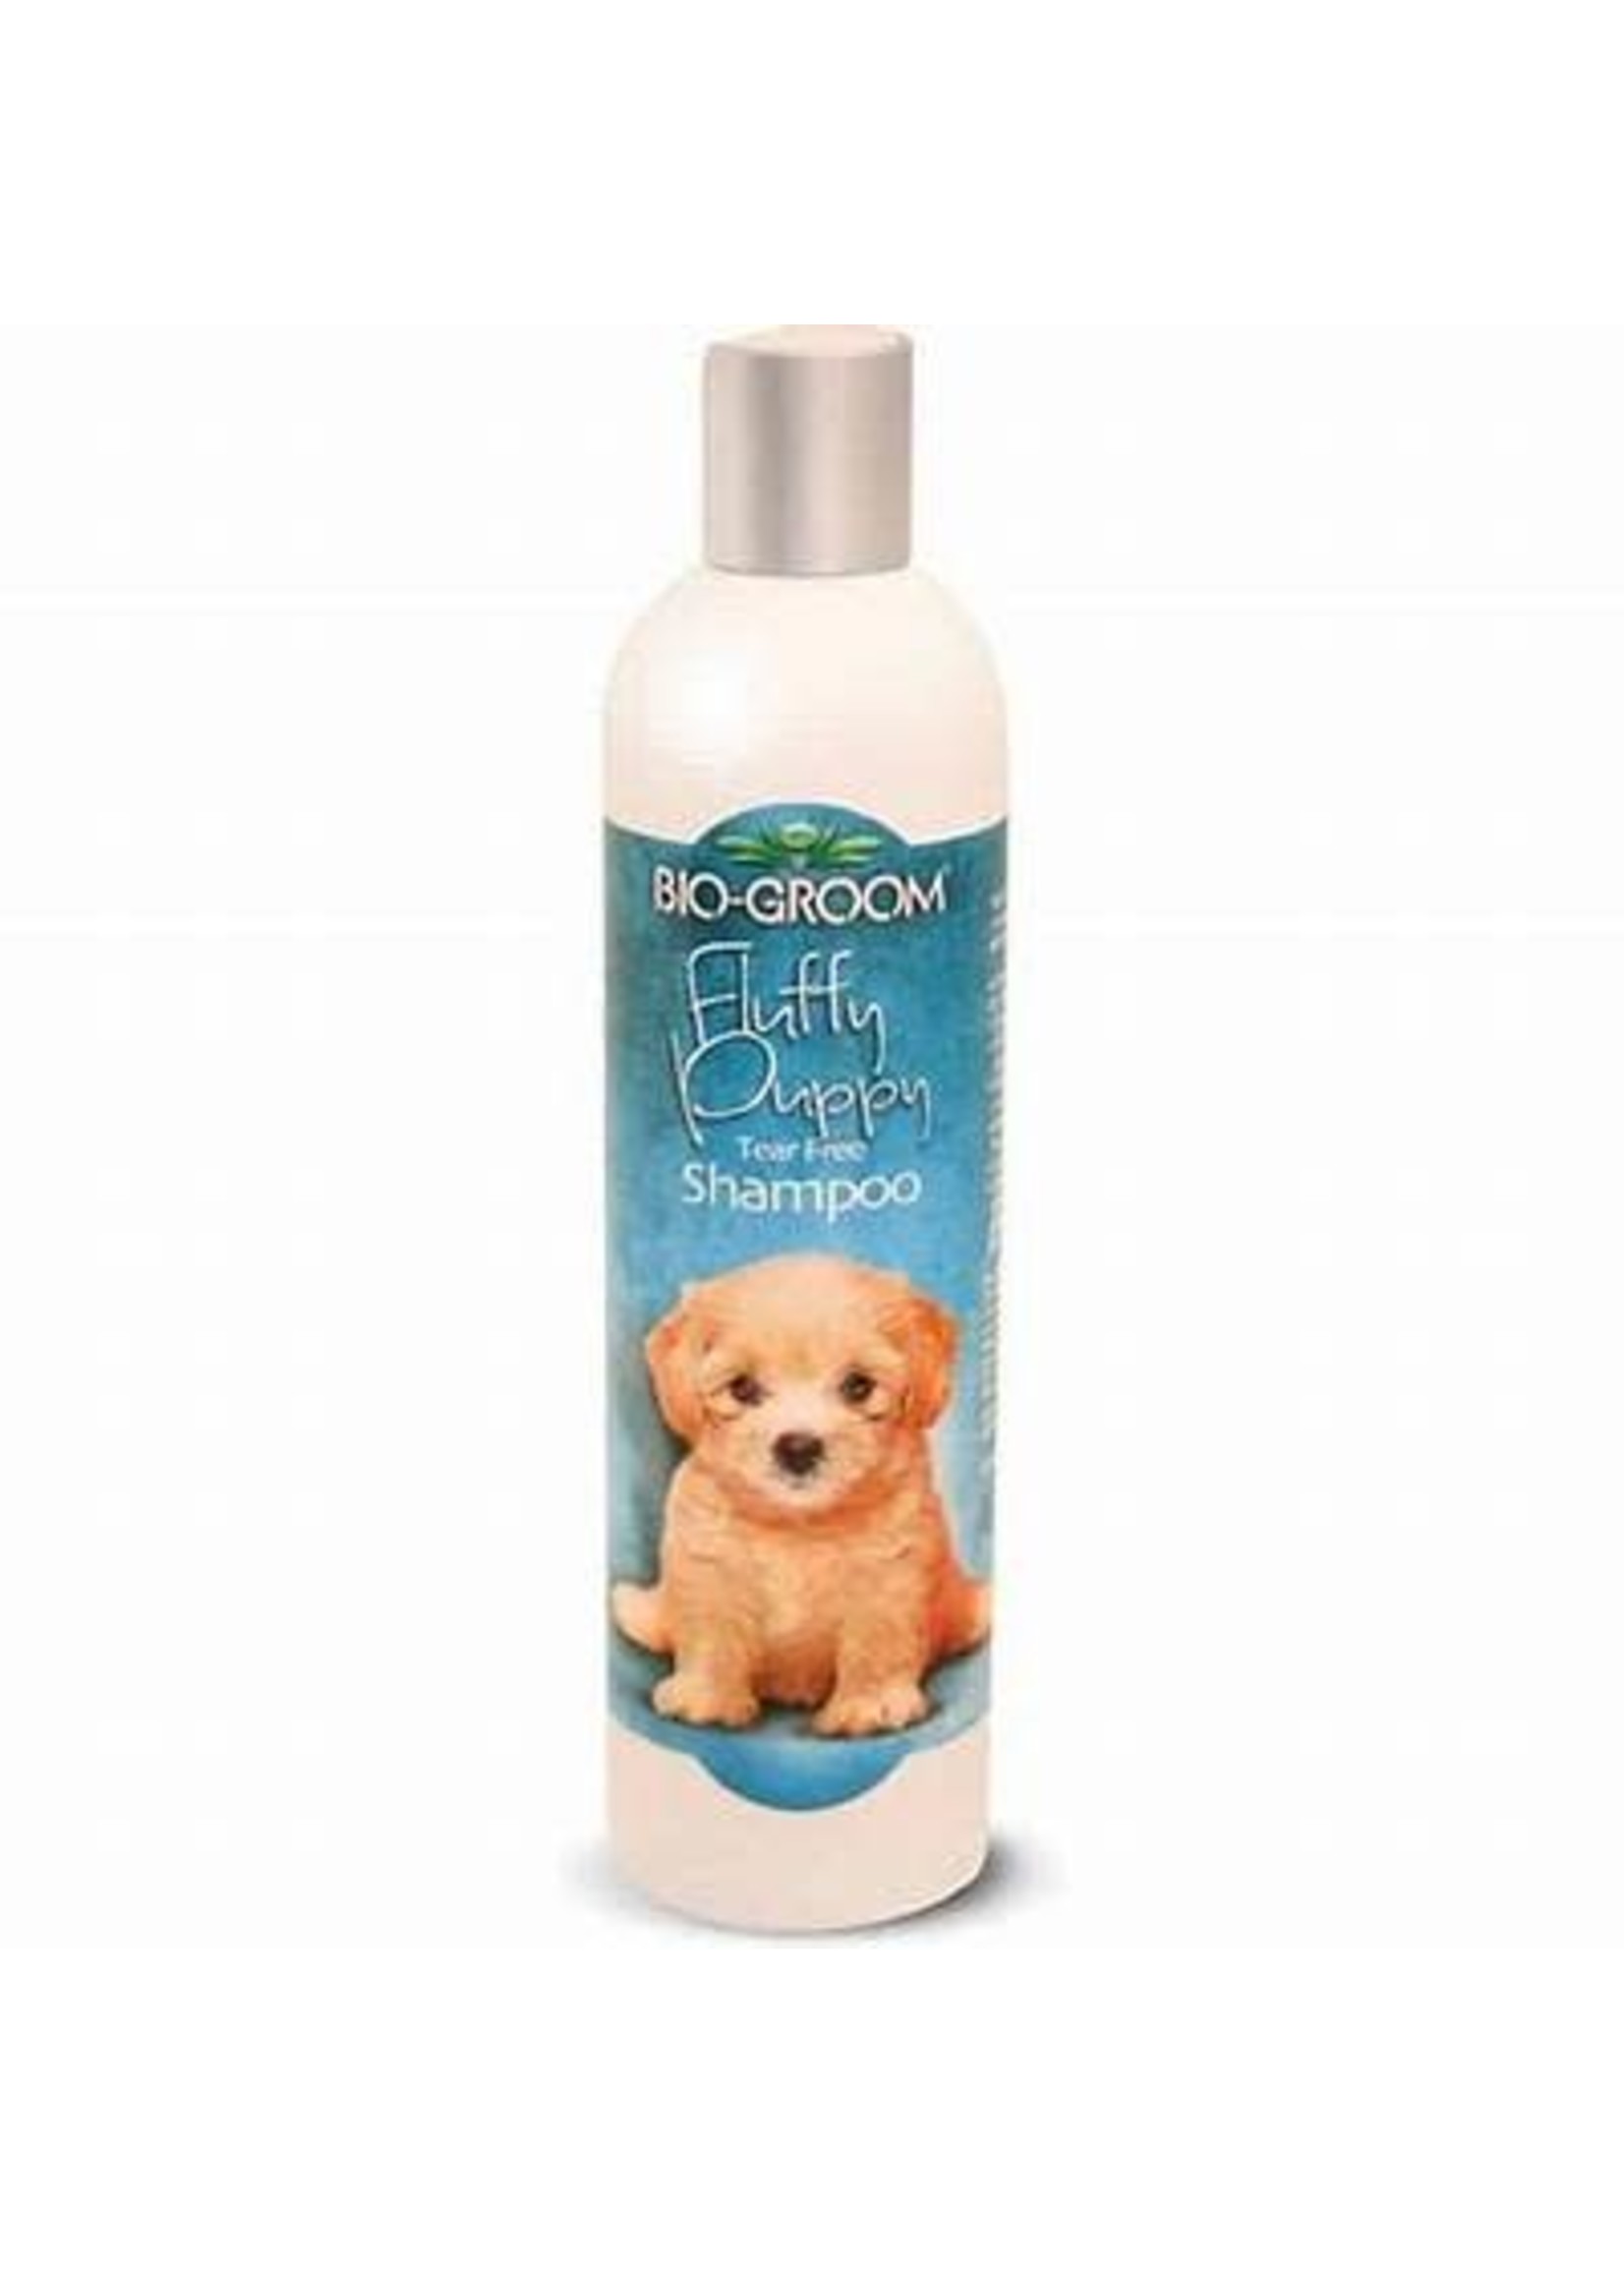 Bio Groom Bio Groom Fluffy Puppy Shampoo-12oz